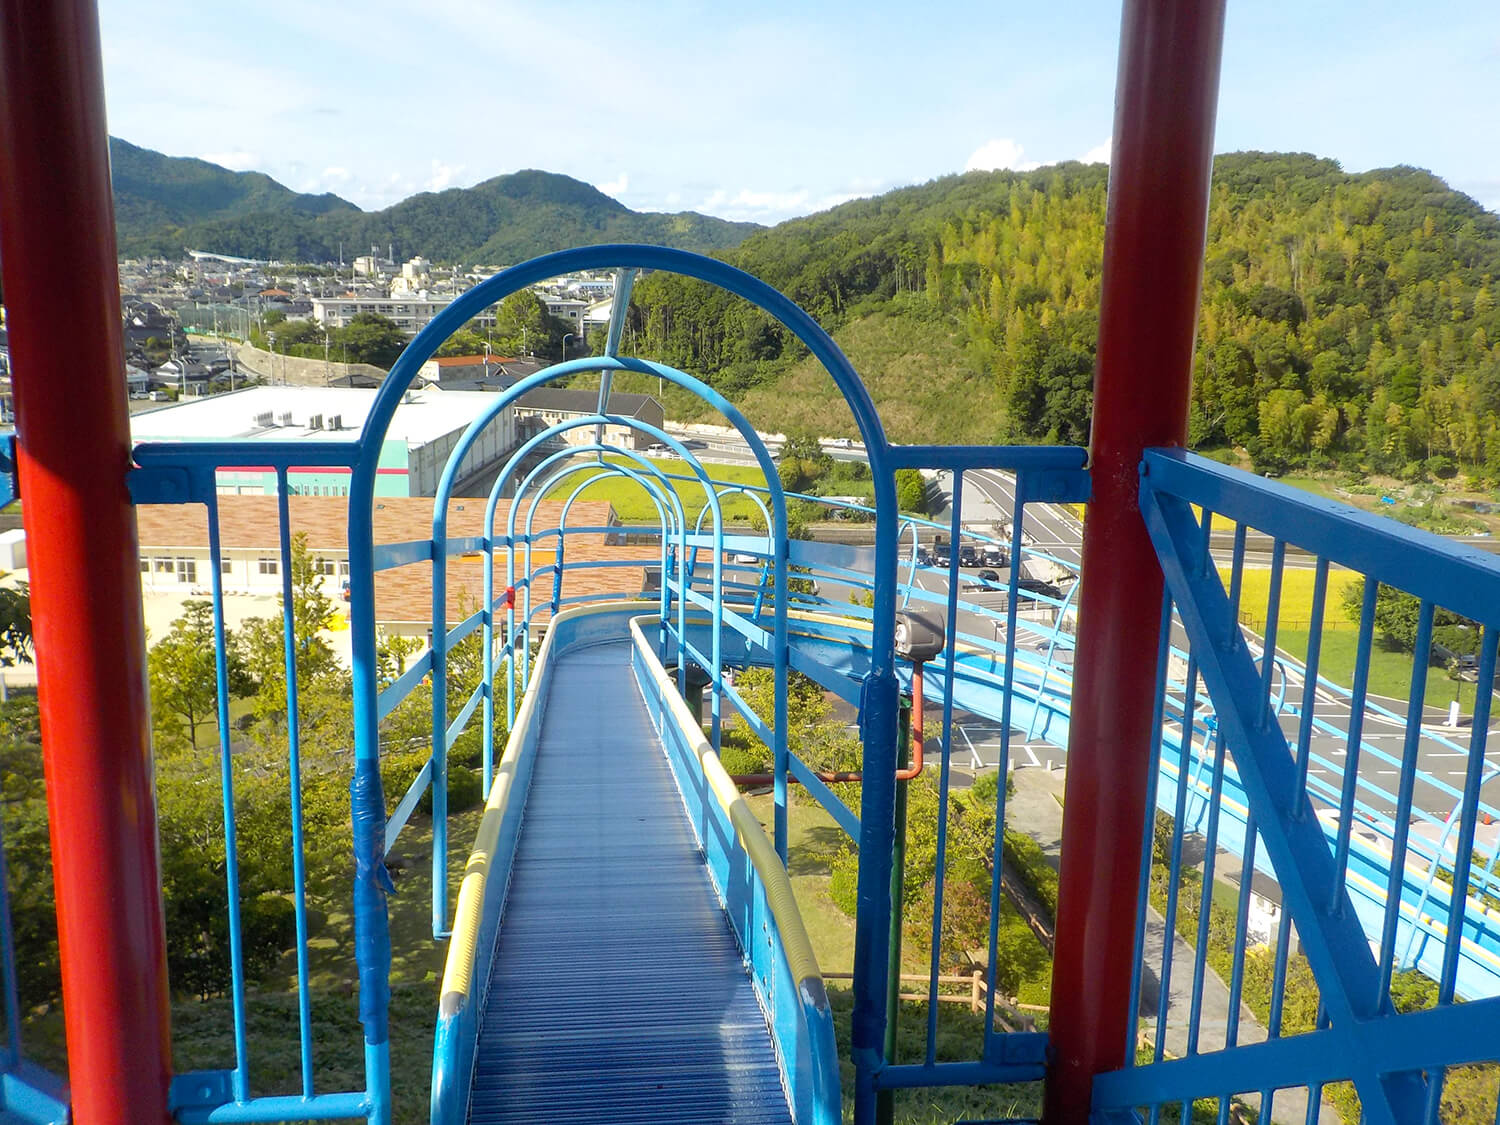 一番人気の遊具「大型ローラーすべり台」。小高い丘の上にあり、公園が一望できるのも人気の理由